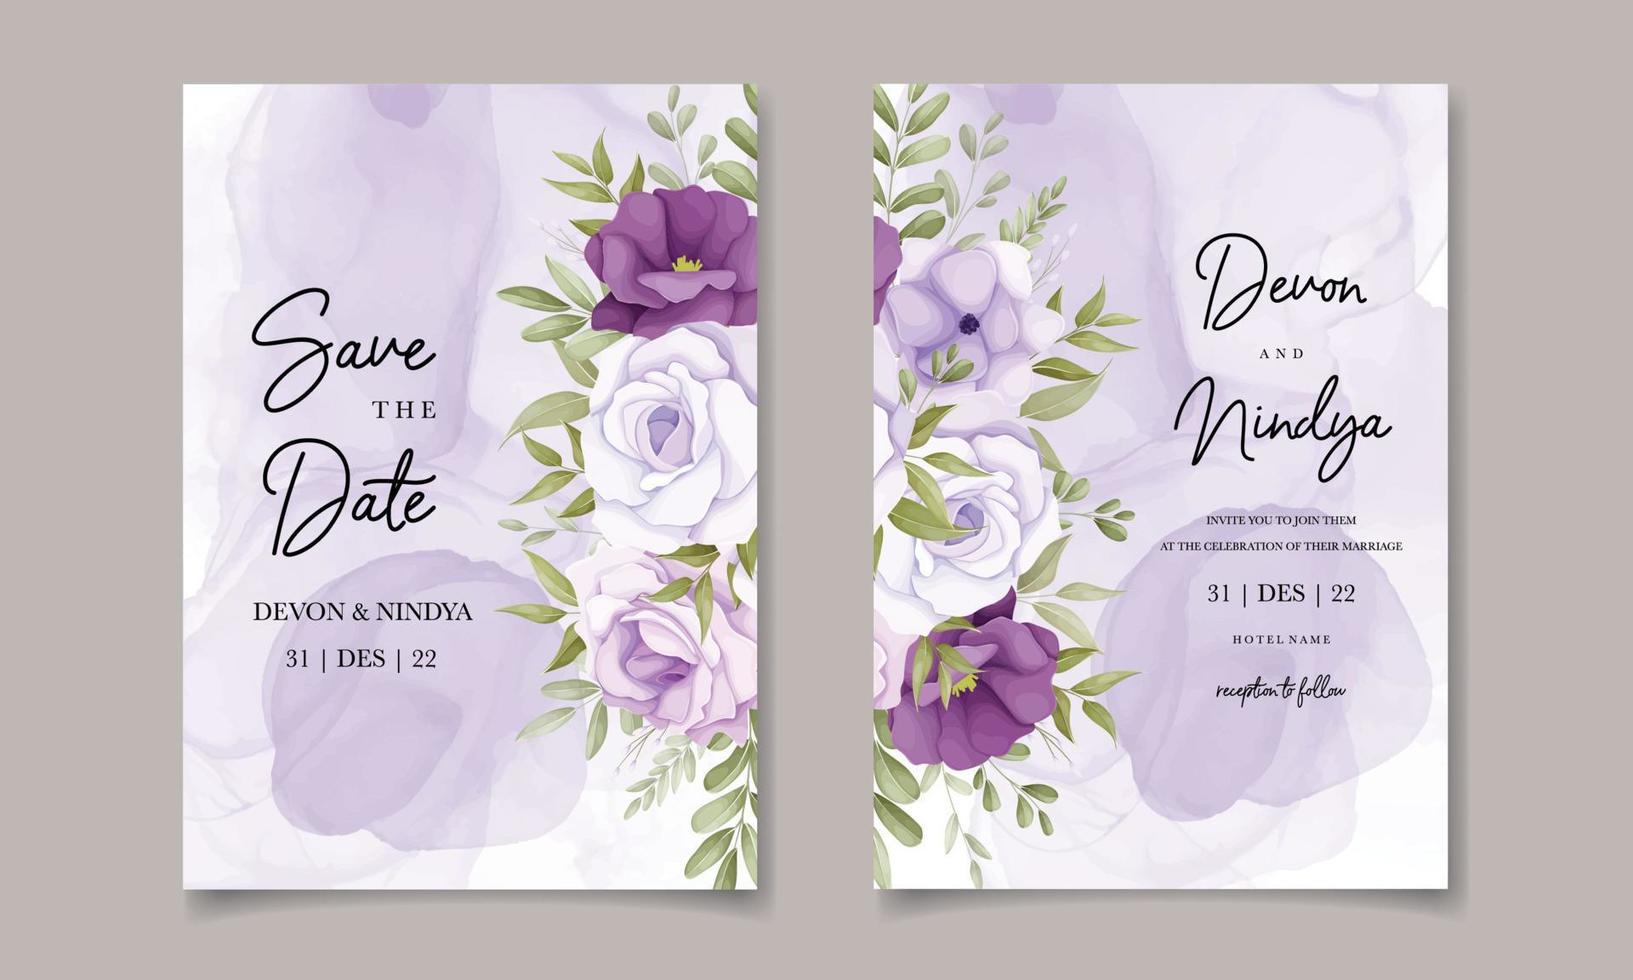 elegante tarjeta de invitación de boda con decoración de flores moradas vector